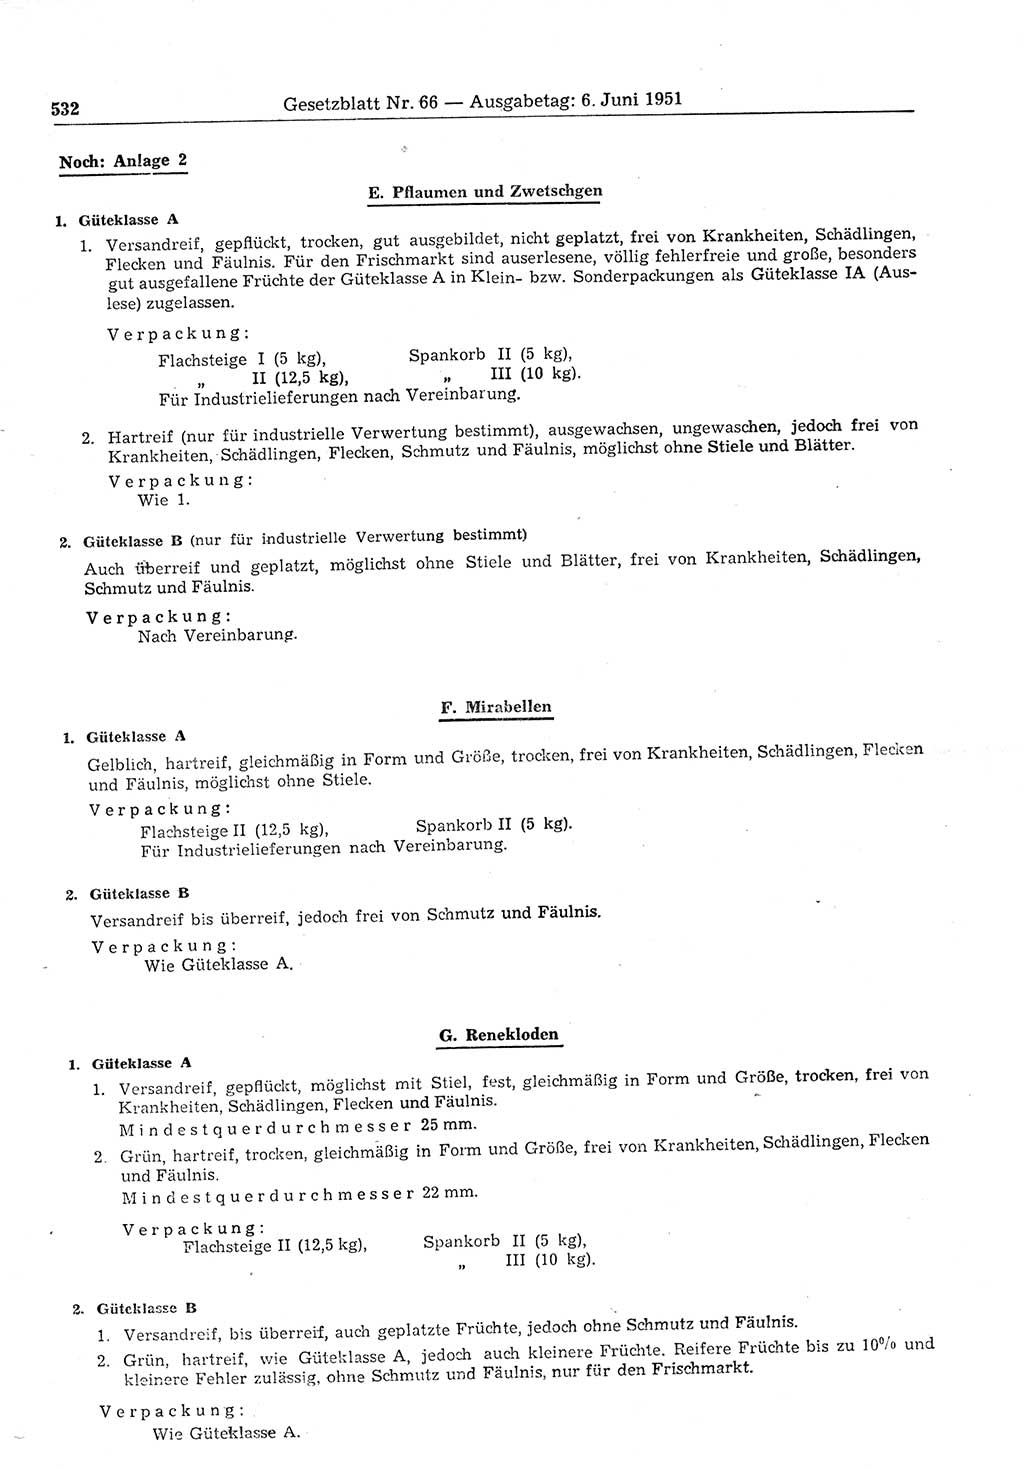 Gesetzblatt (GBl.) der Deutschen Demokratischen Republik (DDR) 1951, Seite 532 (GBl. DDR 1951, S. 532)